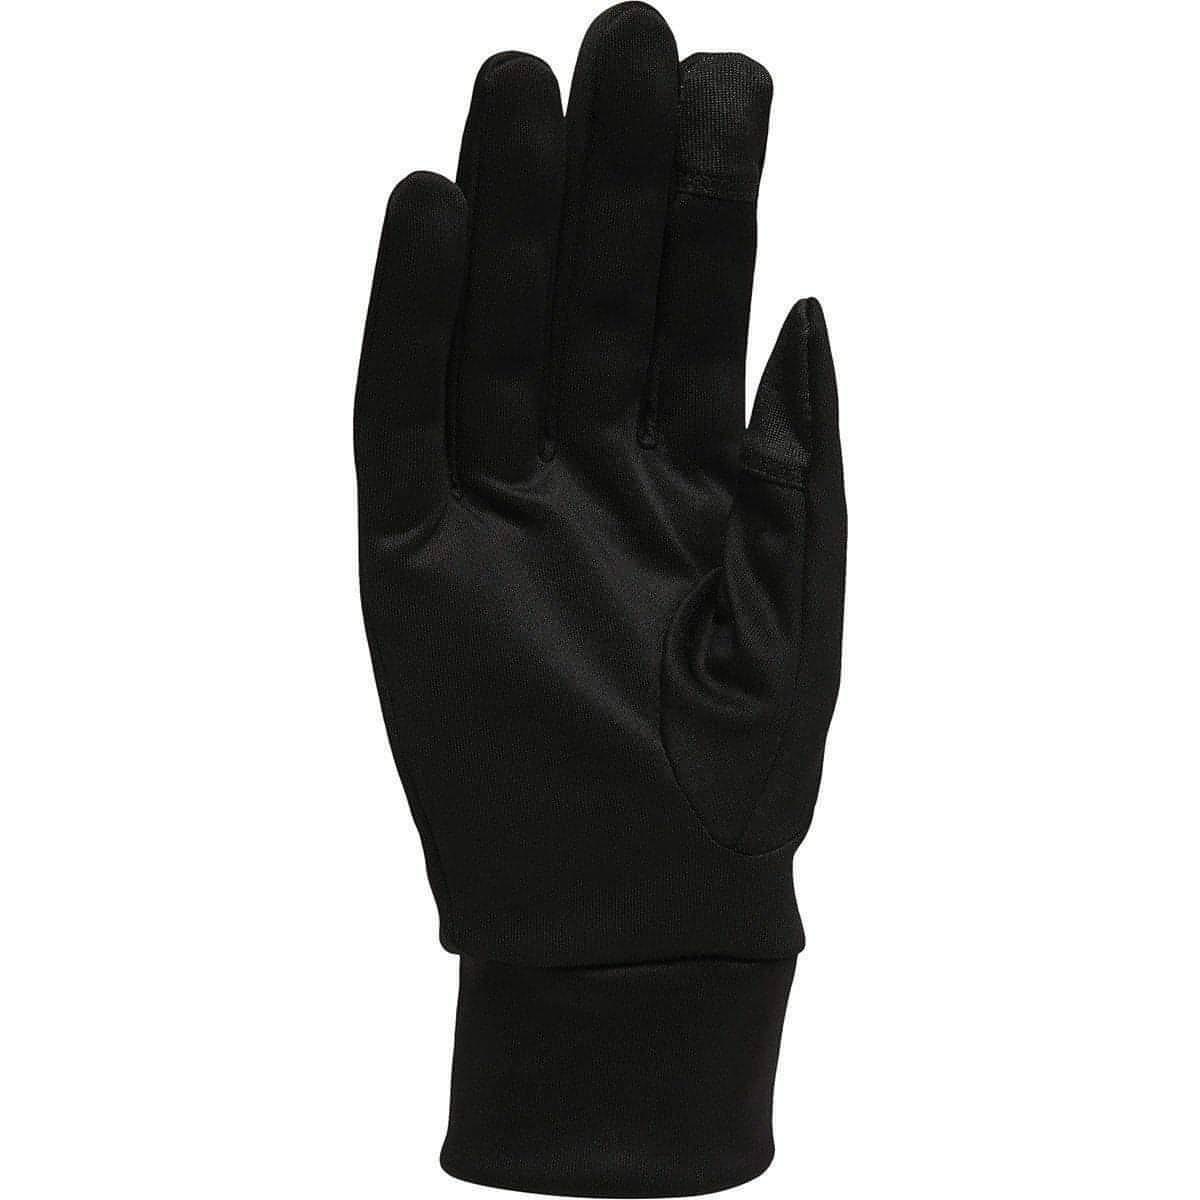 Asics Lite-Show Running Gloves - Black - Start Fitness